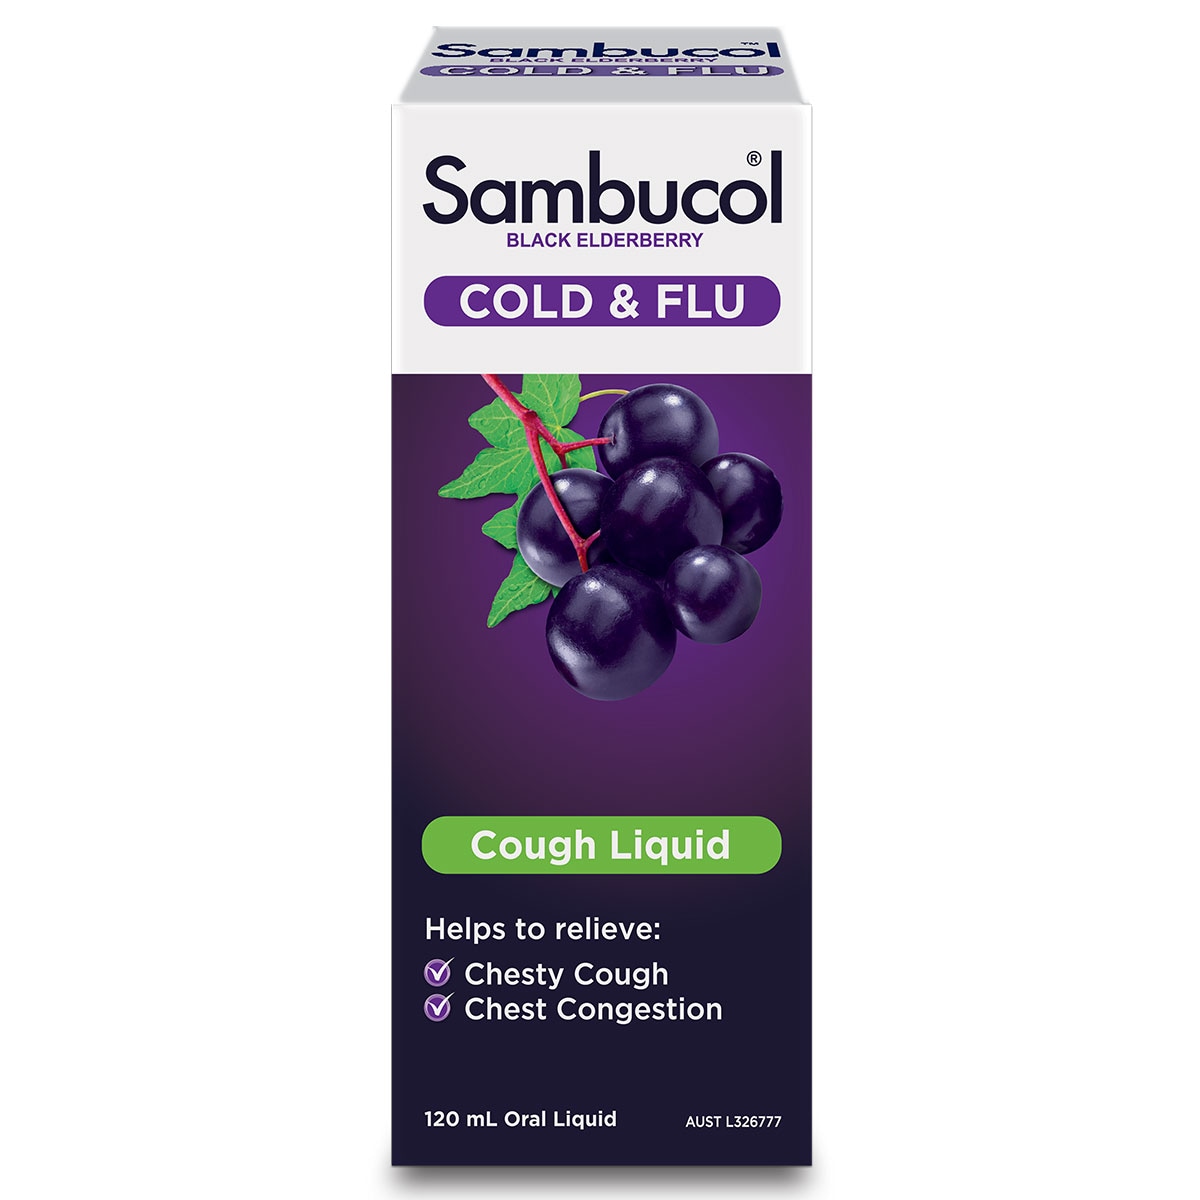 Sambucol Cough Relief Liquid 120ml